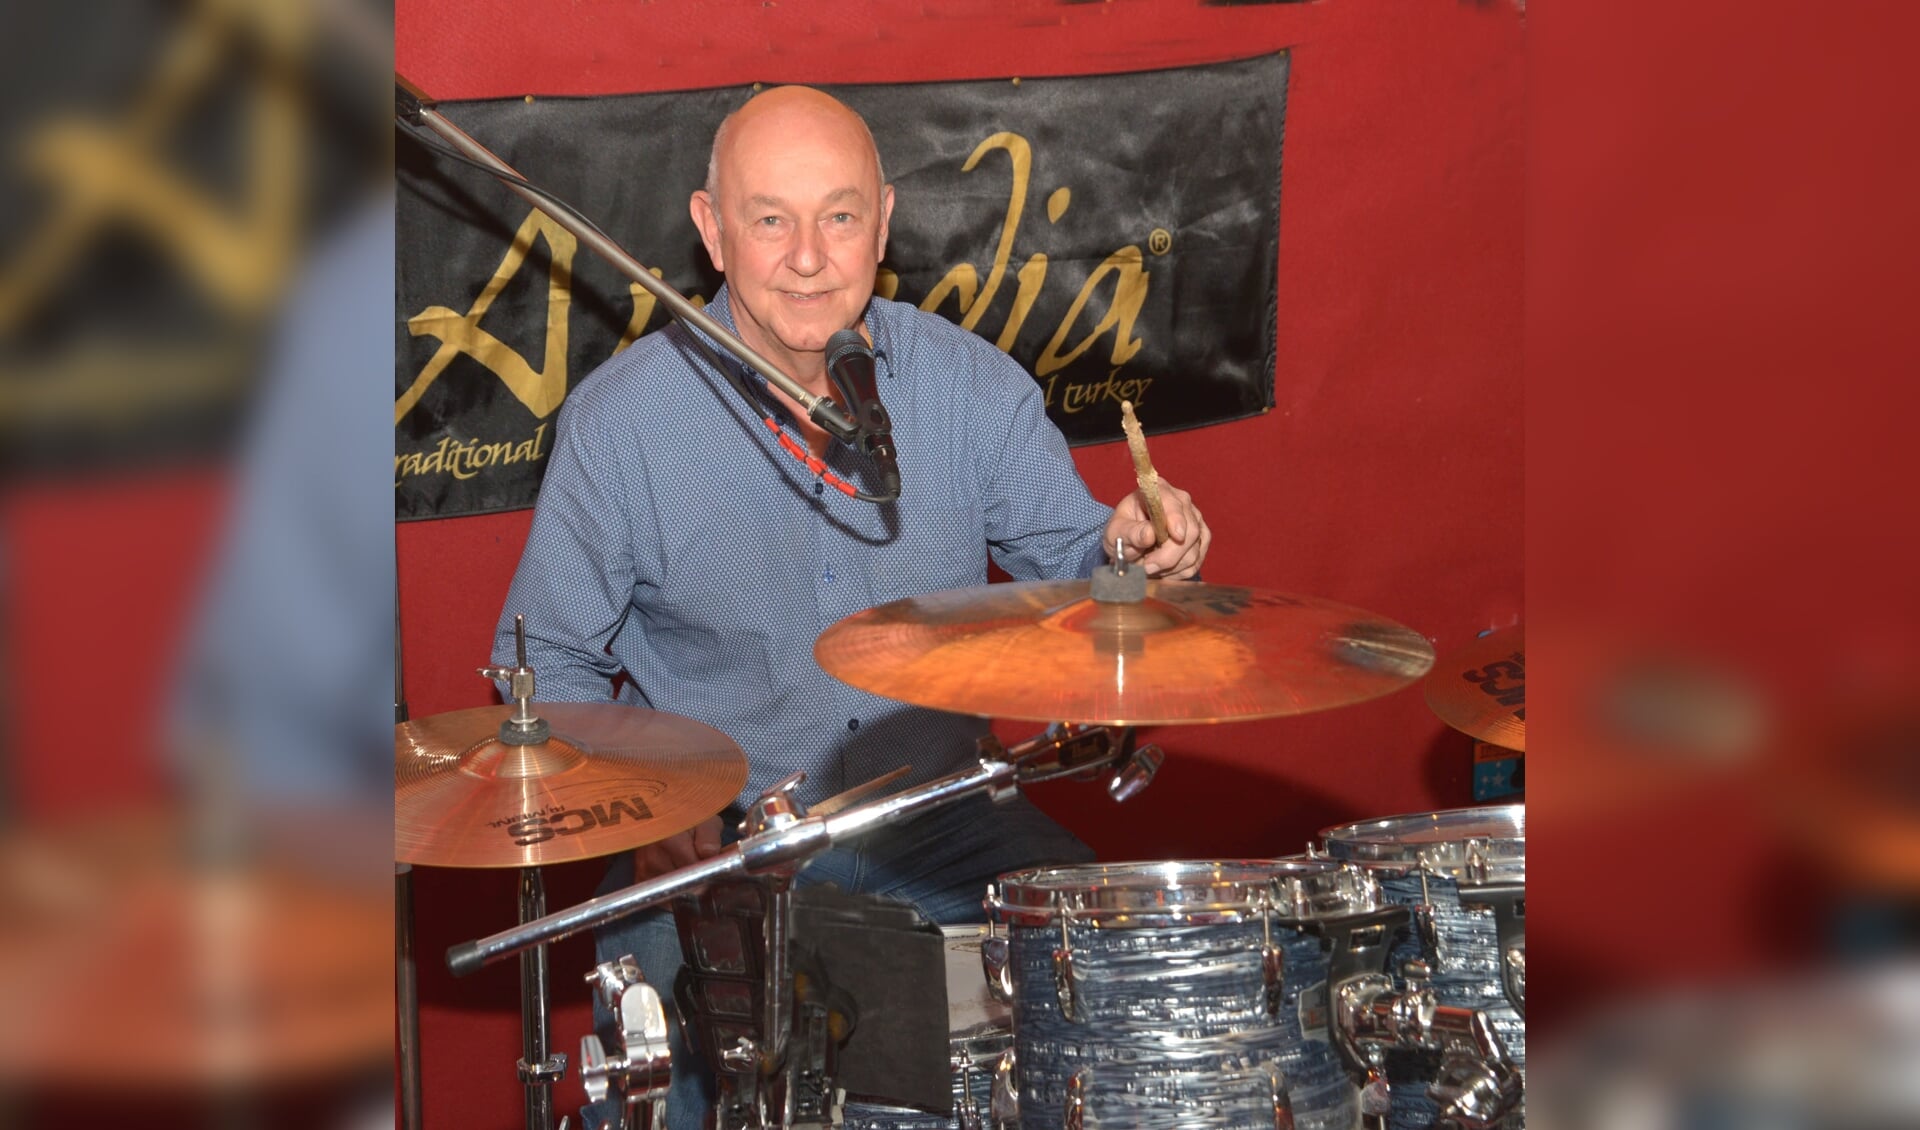 Tonny achter zijn drumstel (foto: Henk Lunenburg)